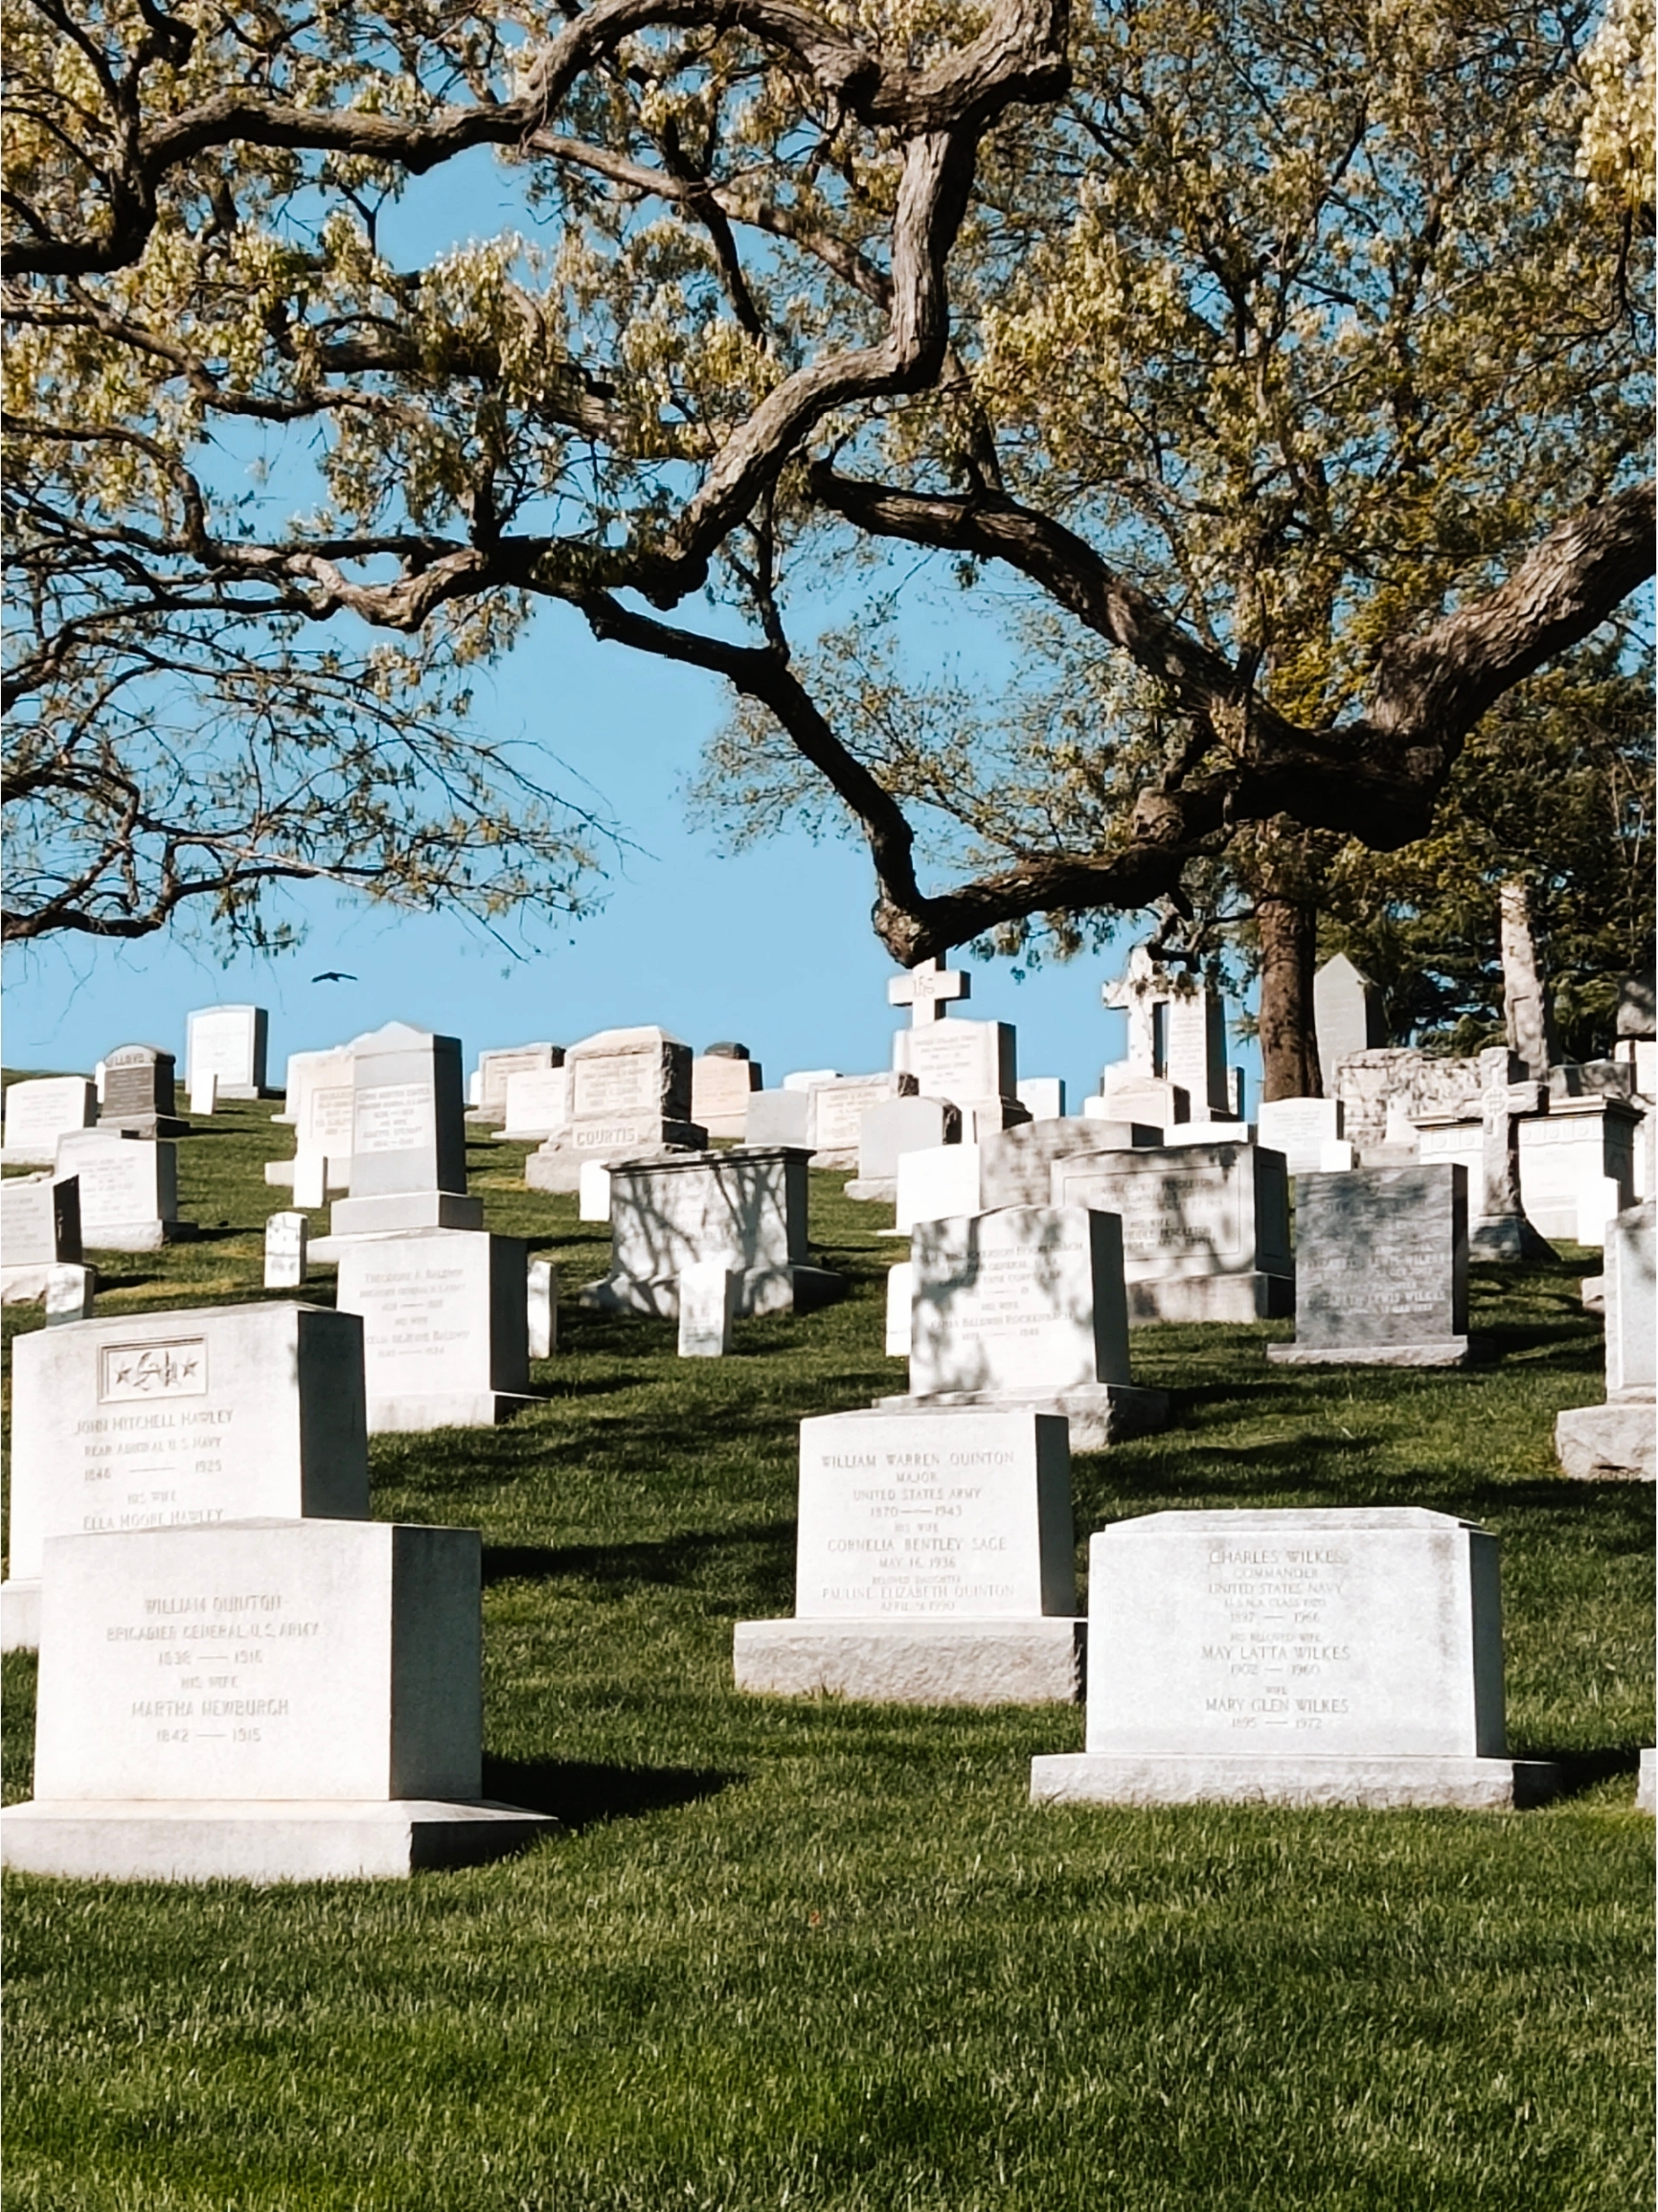 如果你来到华盛顿特区，一定不要错过参观阿灵顿公墓的机会。阿灵顿公墓是美国历史上最重要的公墓之一，位于